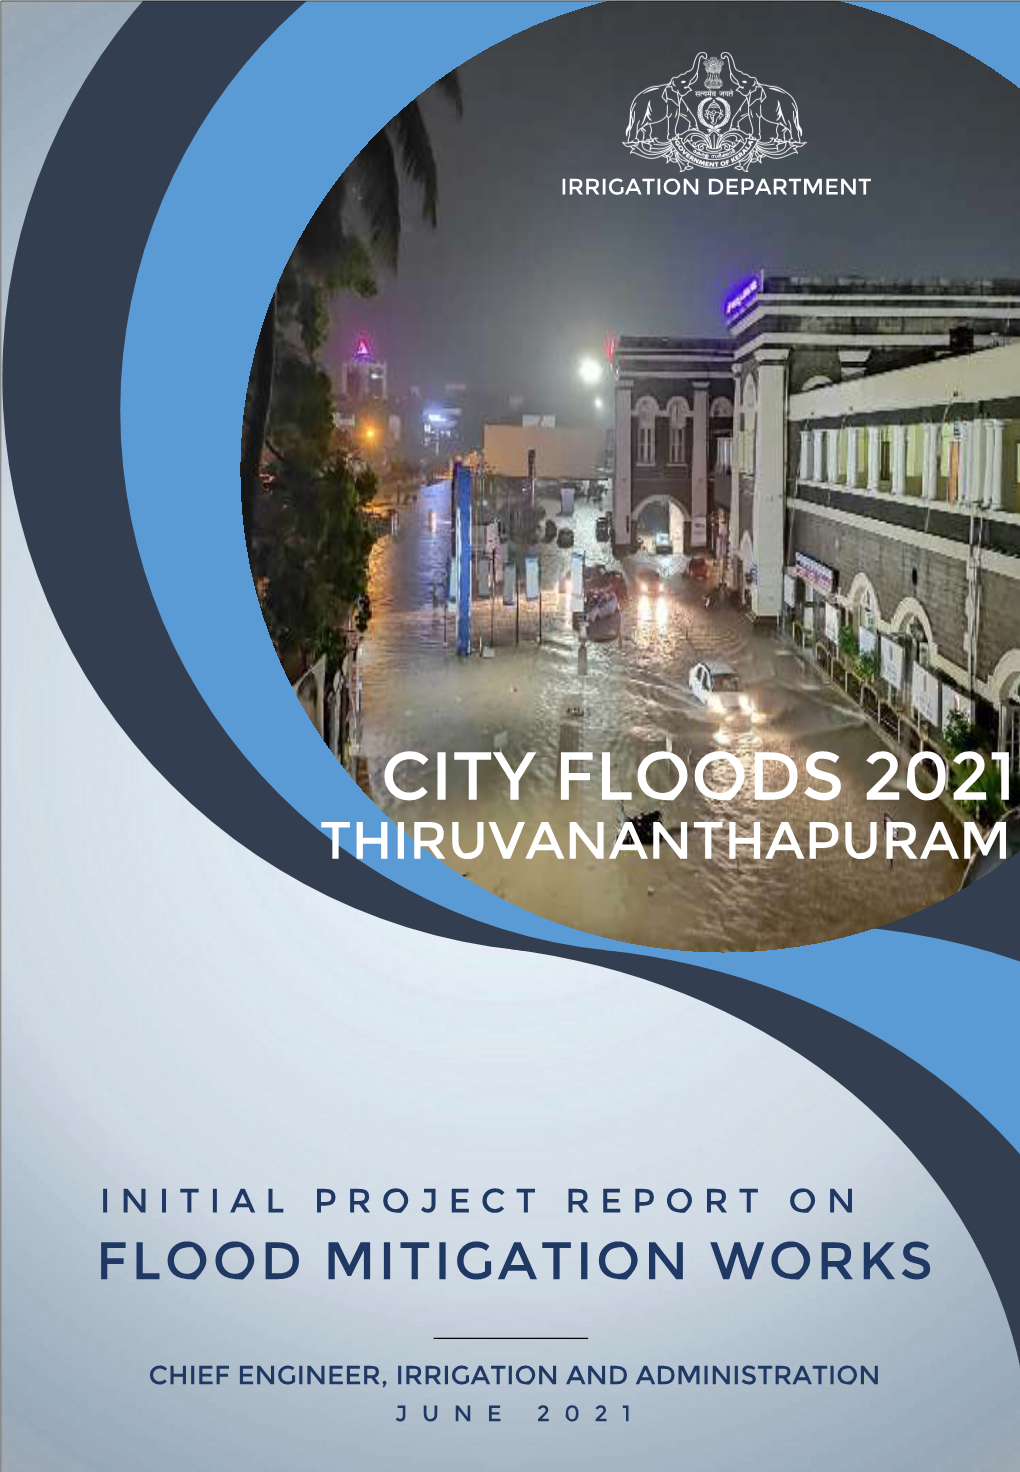 City Floods 2021 Thiruvananthapuram